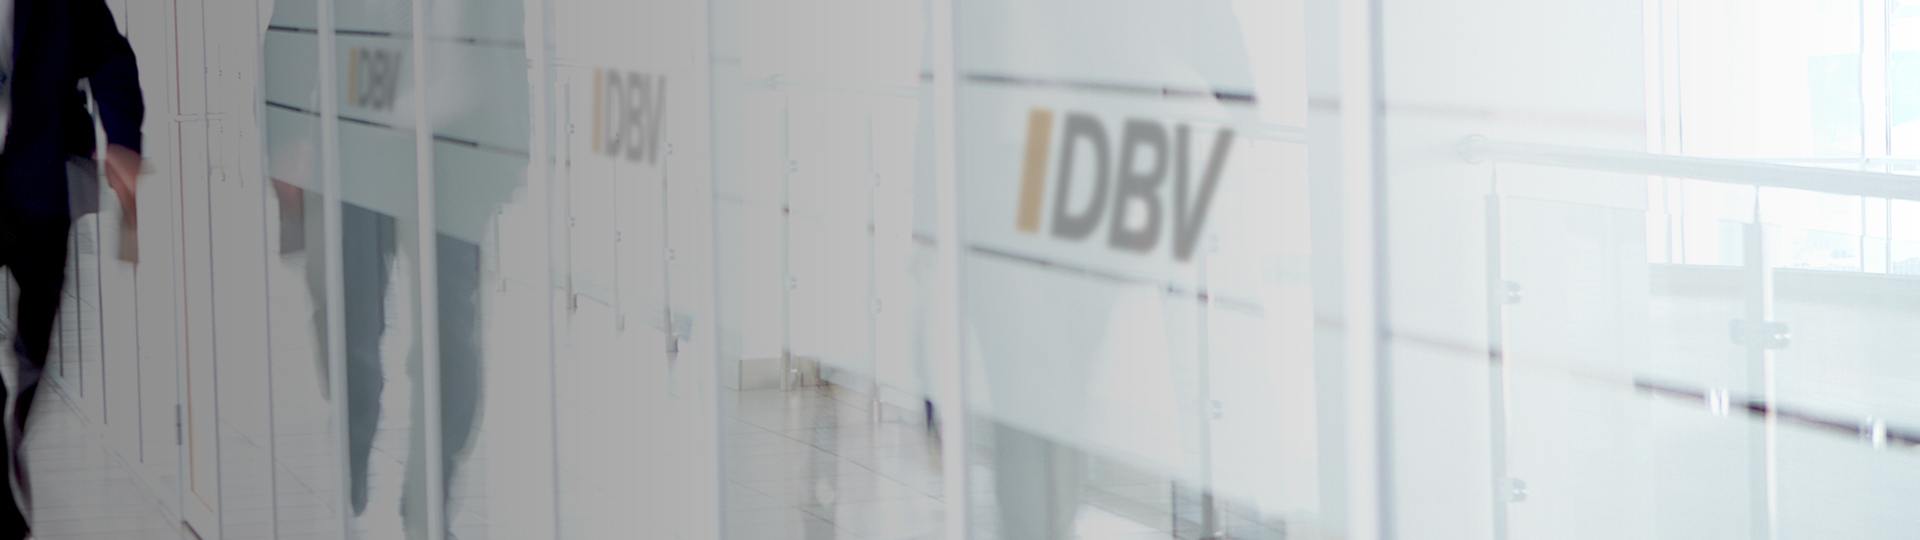 Wichtige Versicherungen | DBV Magdeburg Fink & Wagner GmbH